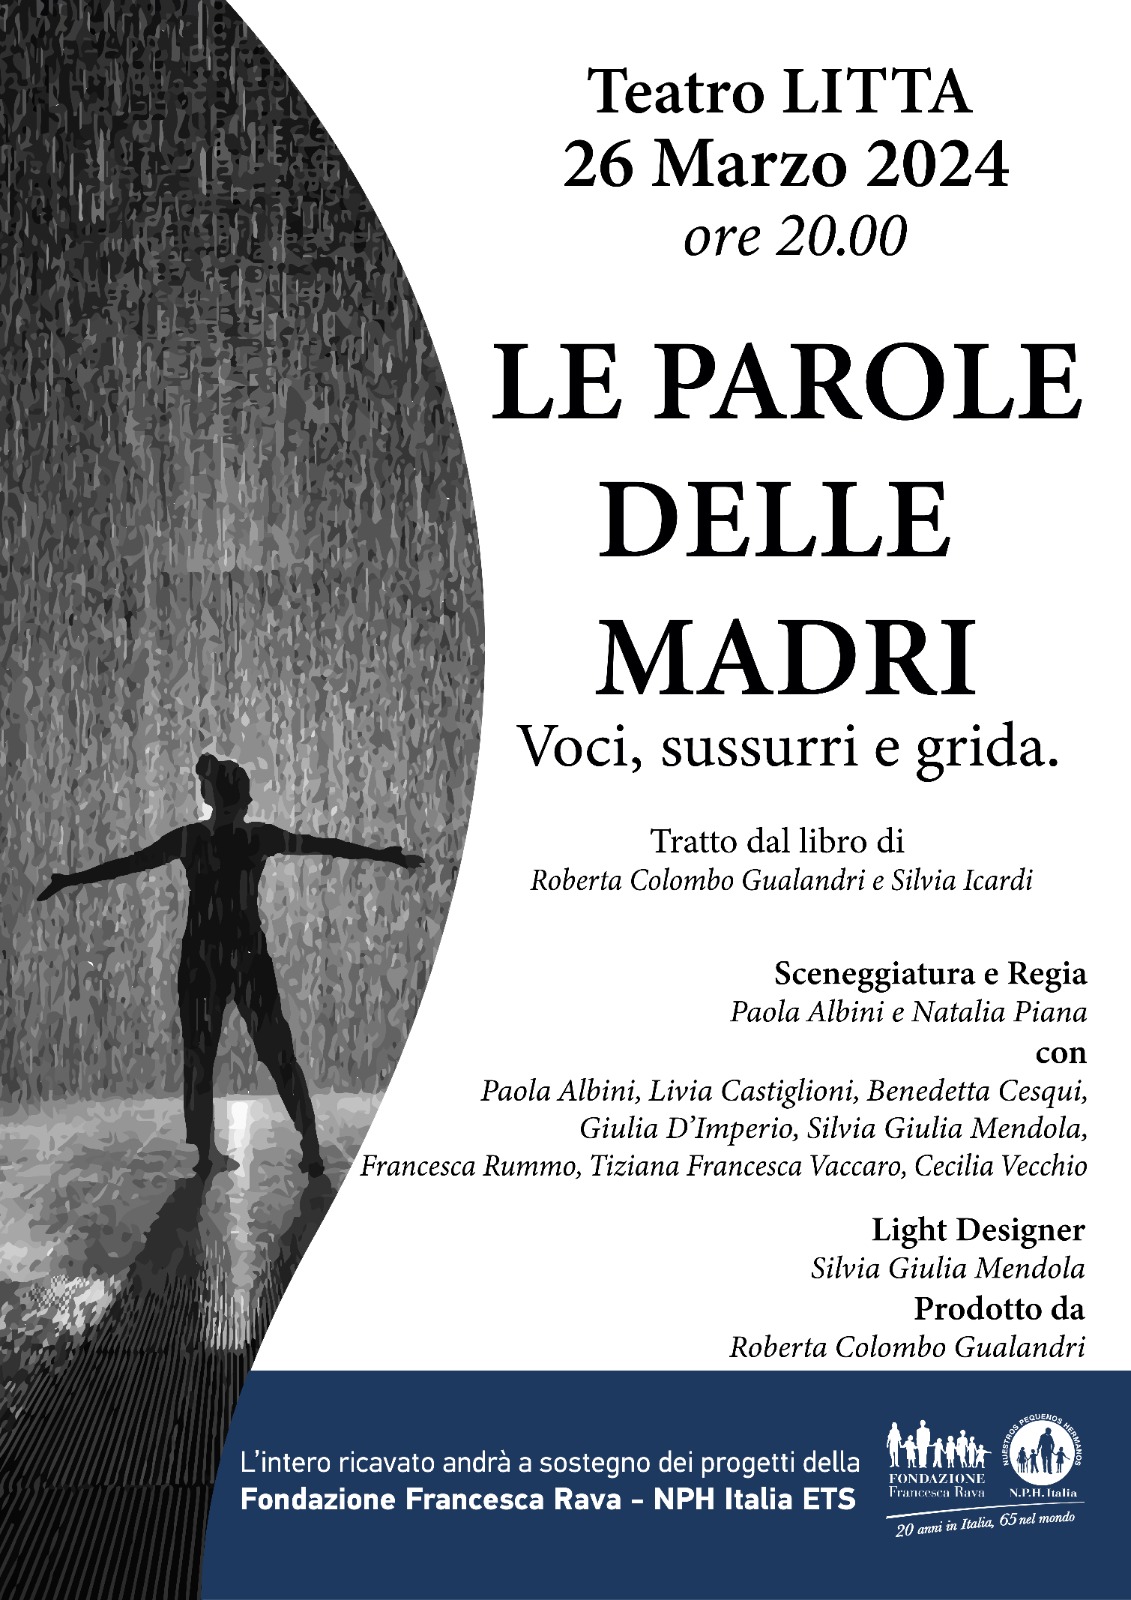 `Le parole delle madri` a Teatro Litta il 26 marzo, prenota il tuo posto!